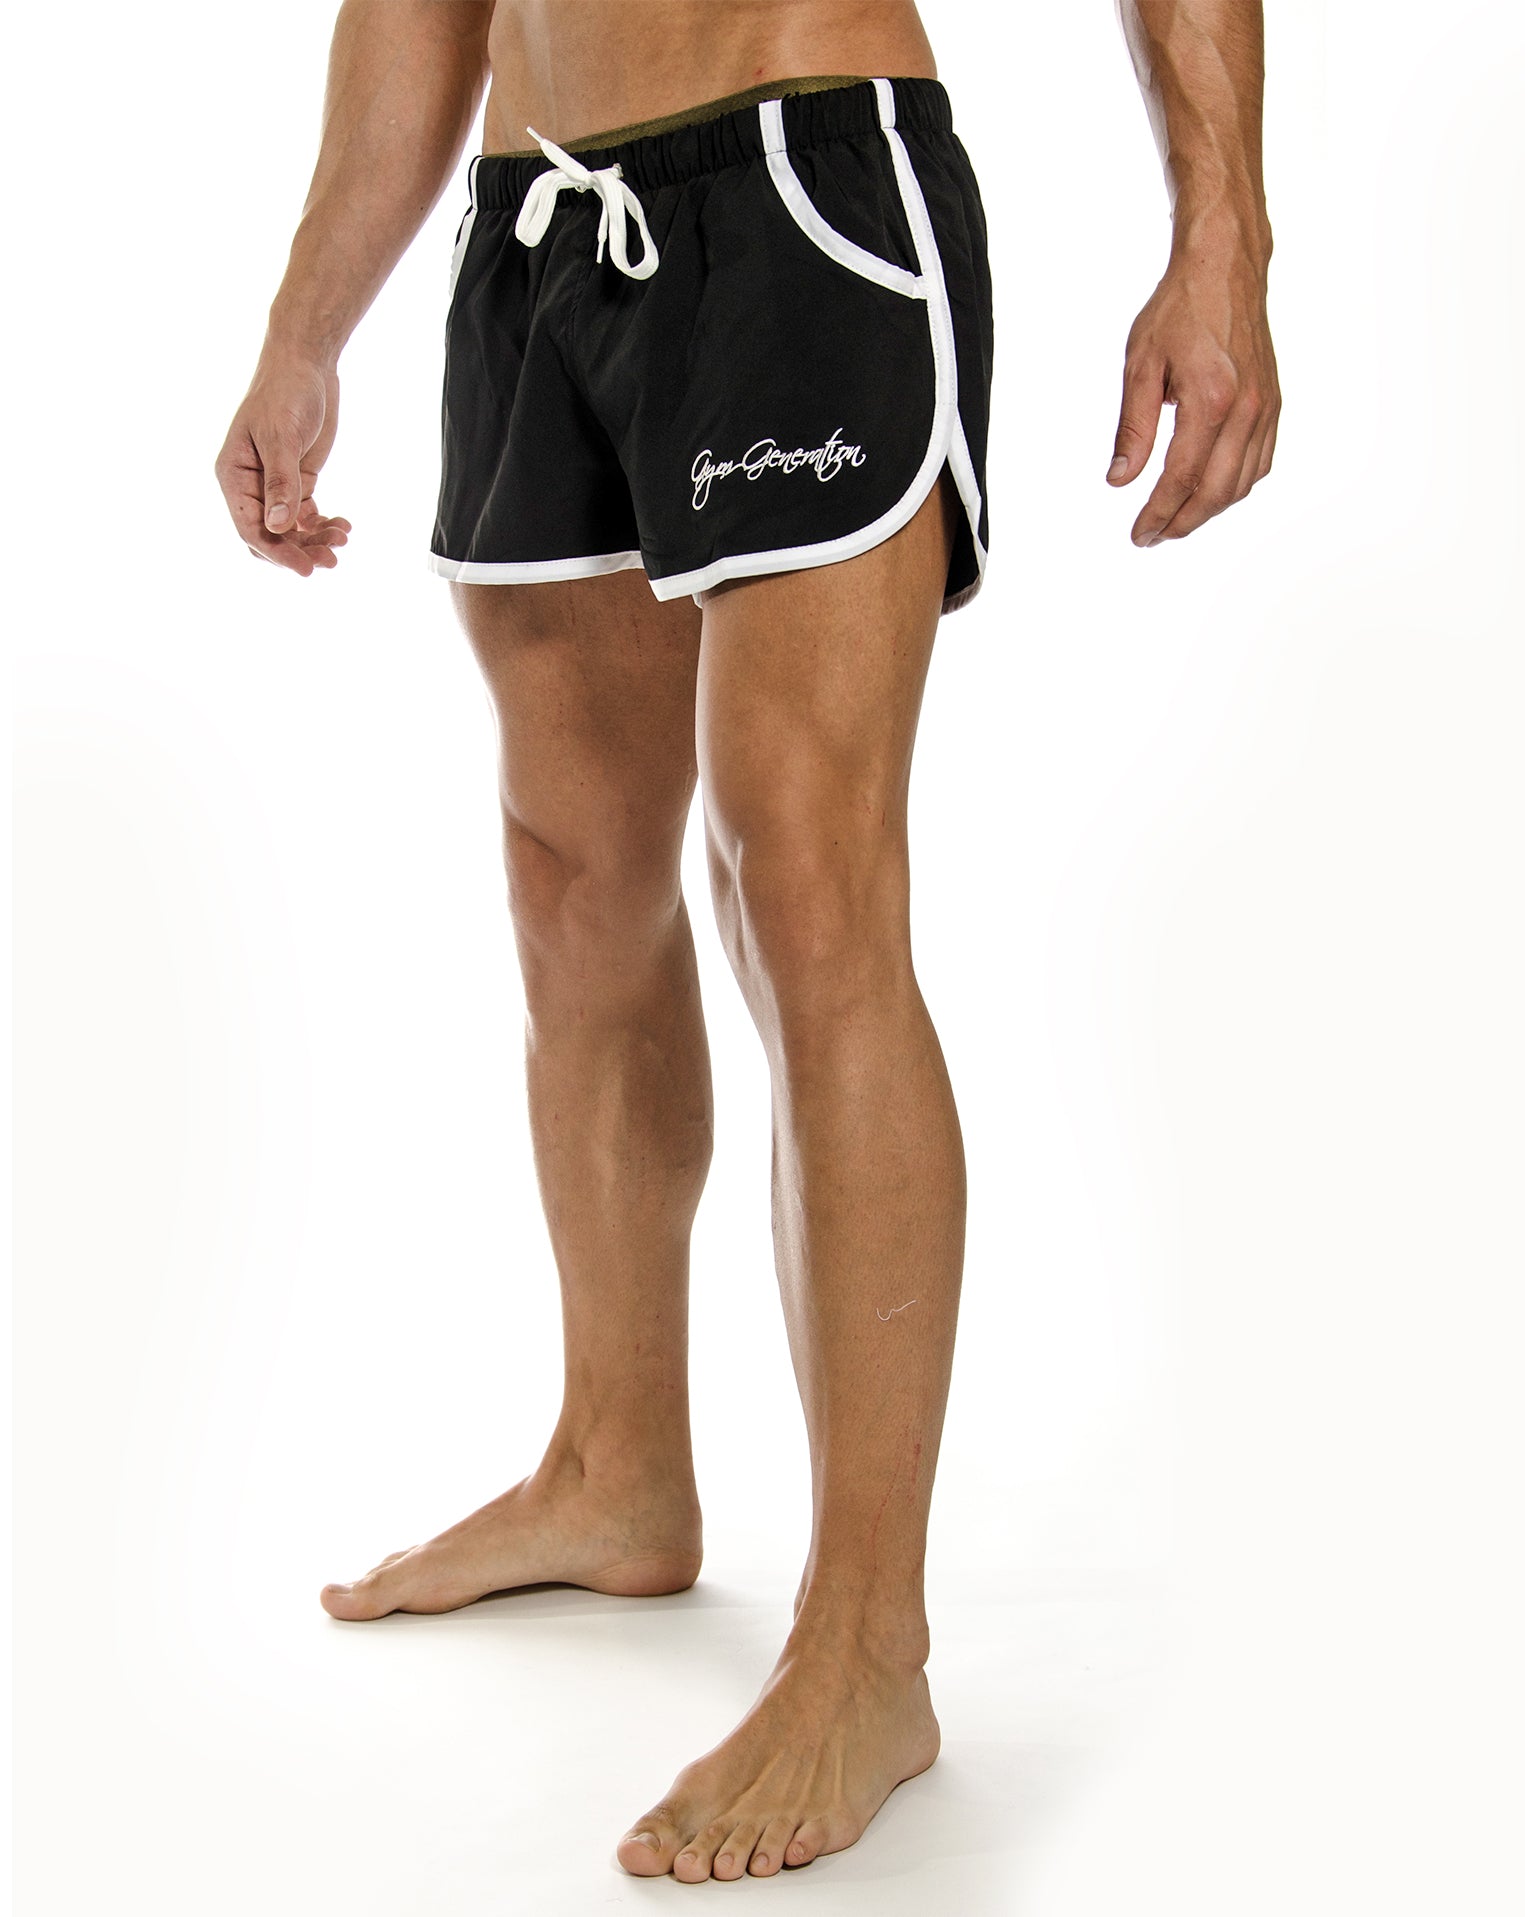 Schwarze Zyzz Shorts von Gym Generation, aus leichtem, atmungsaktivem Polyester, ideal für intensives Training und Freizeit